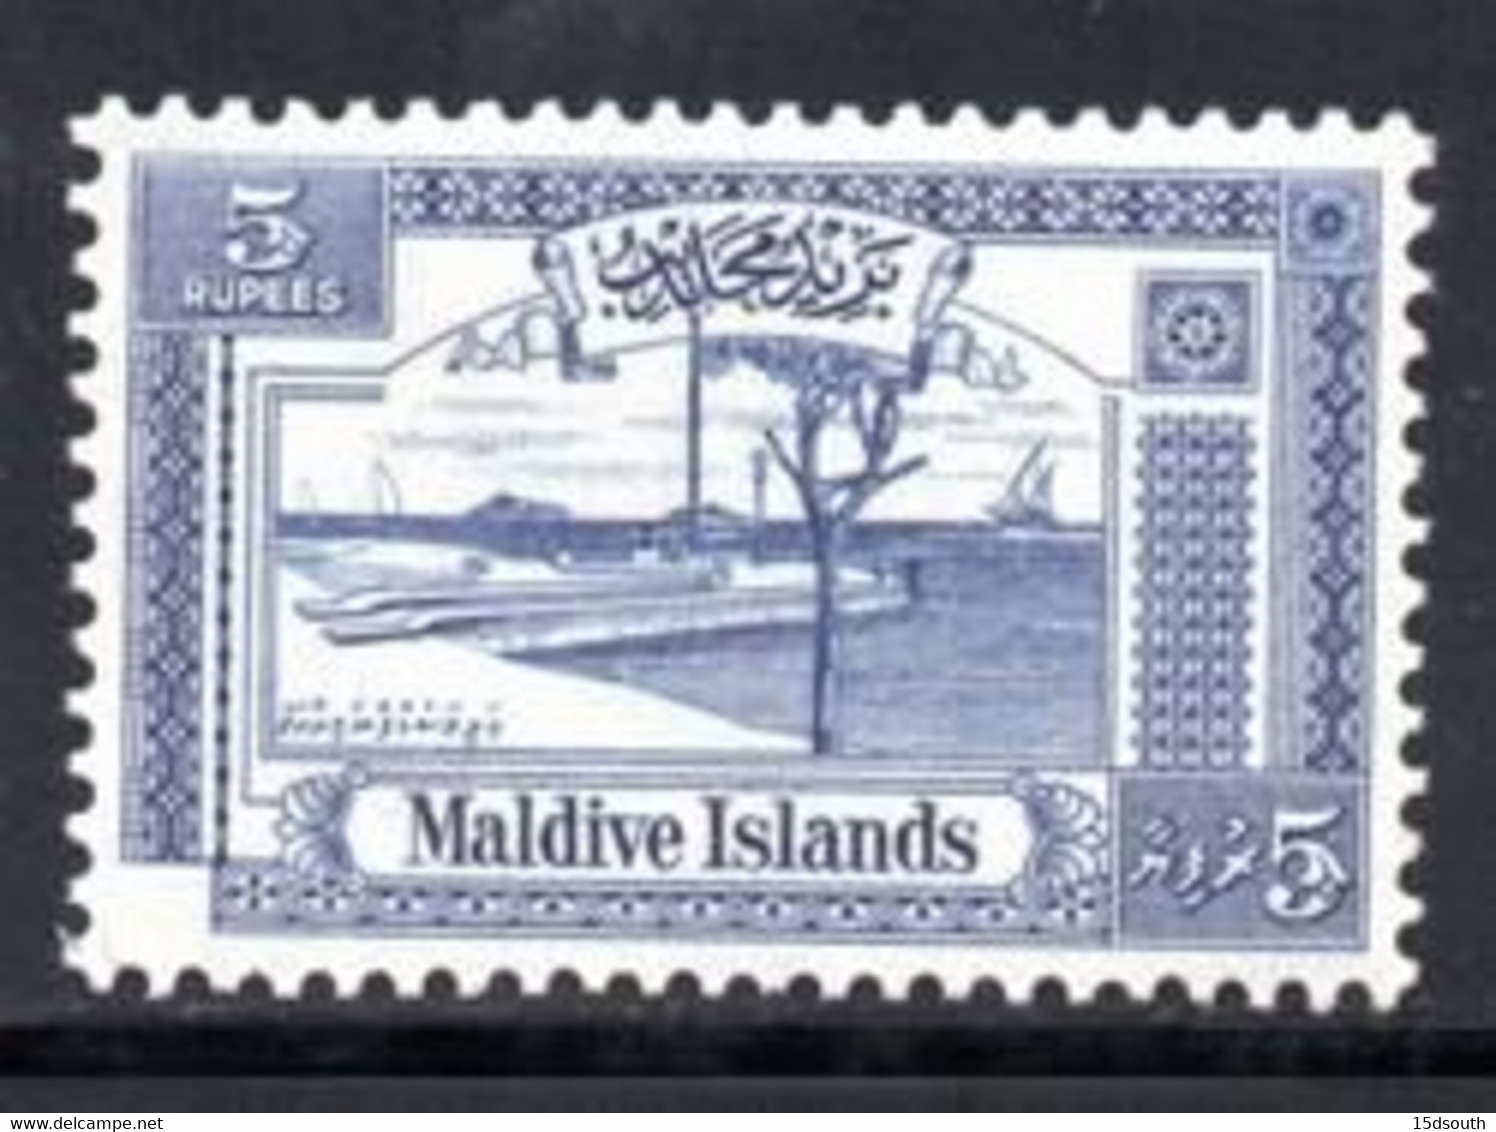 Maldive Islands - 1960 Rs5 (*) # SG 60 - Maldives (...-1965)